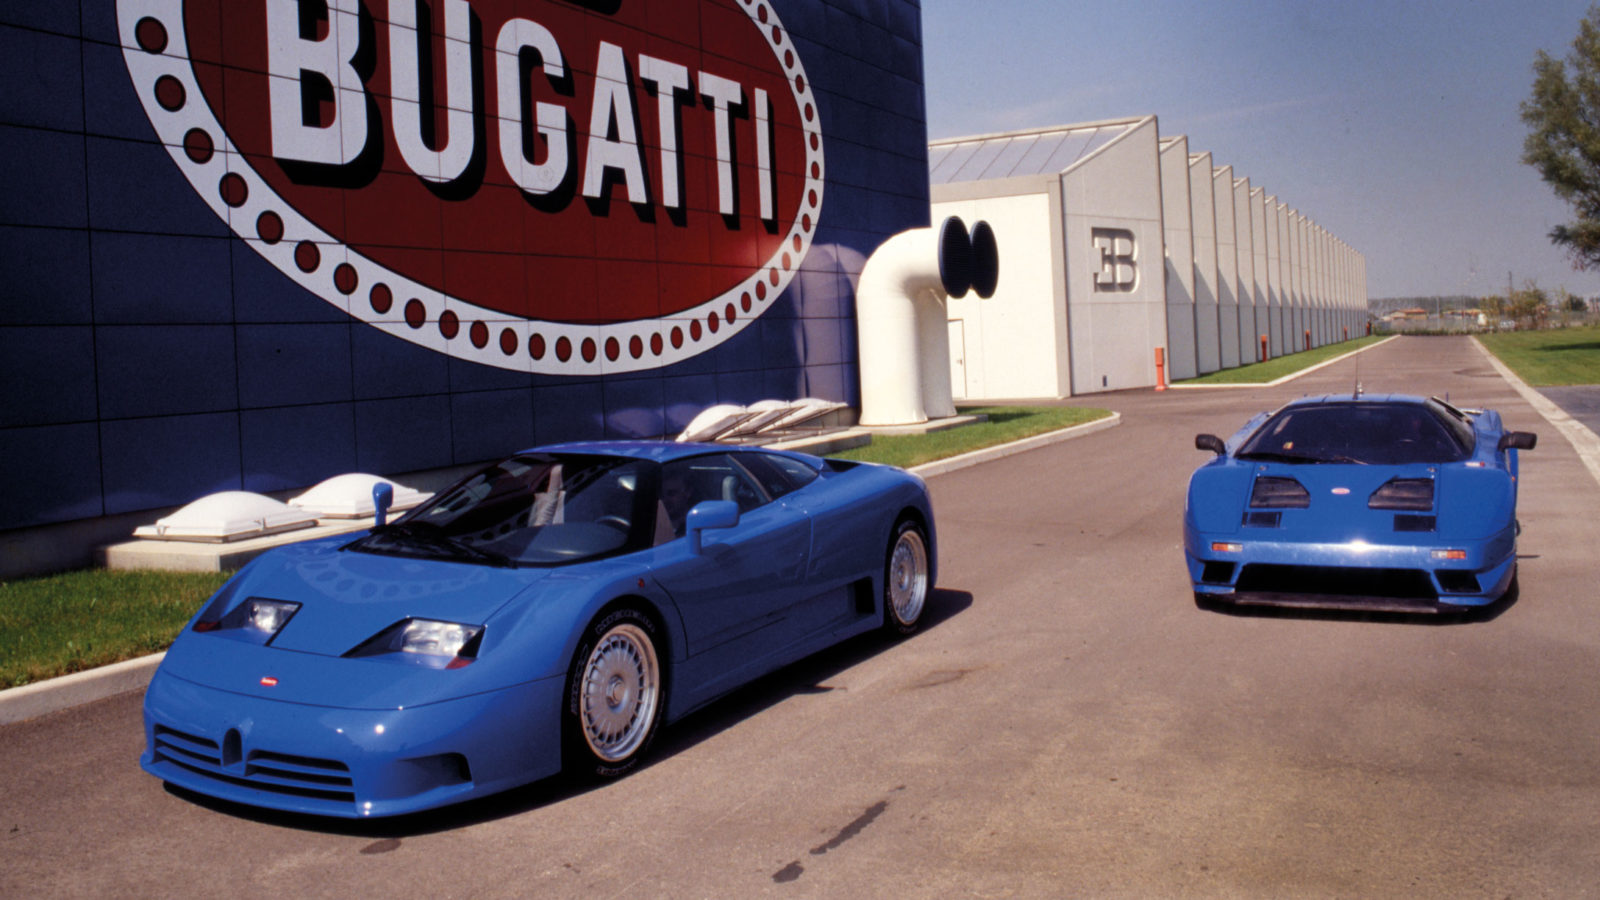 In 1990 Bugatti’s shiny factory